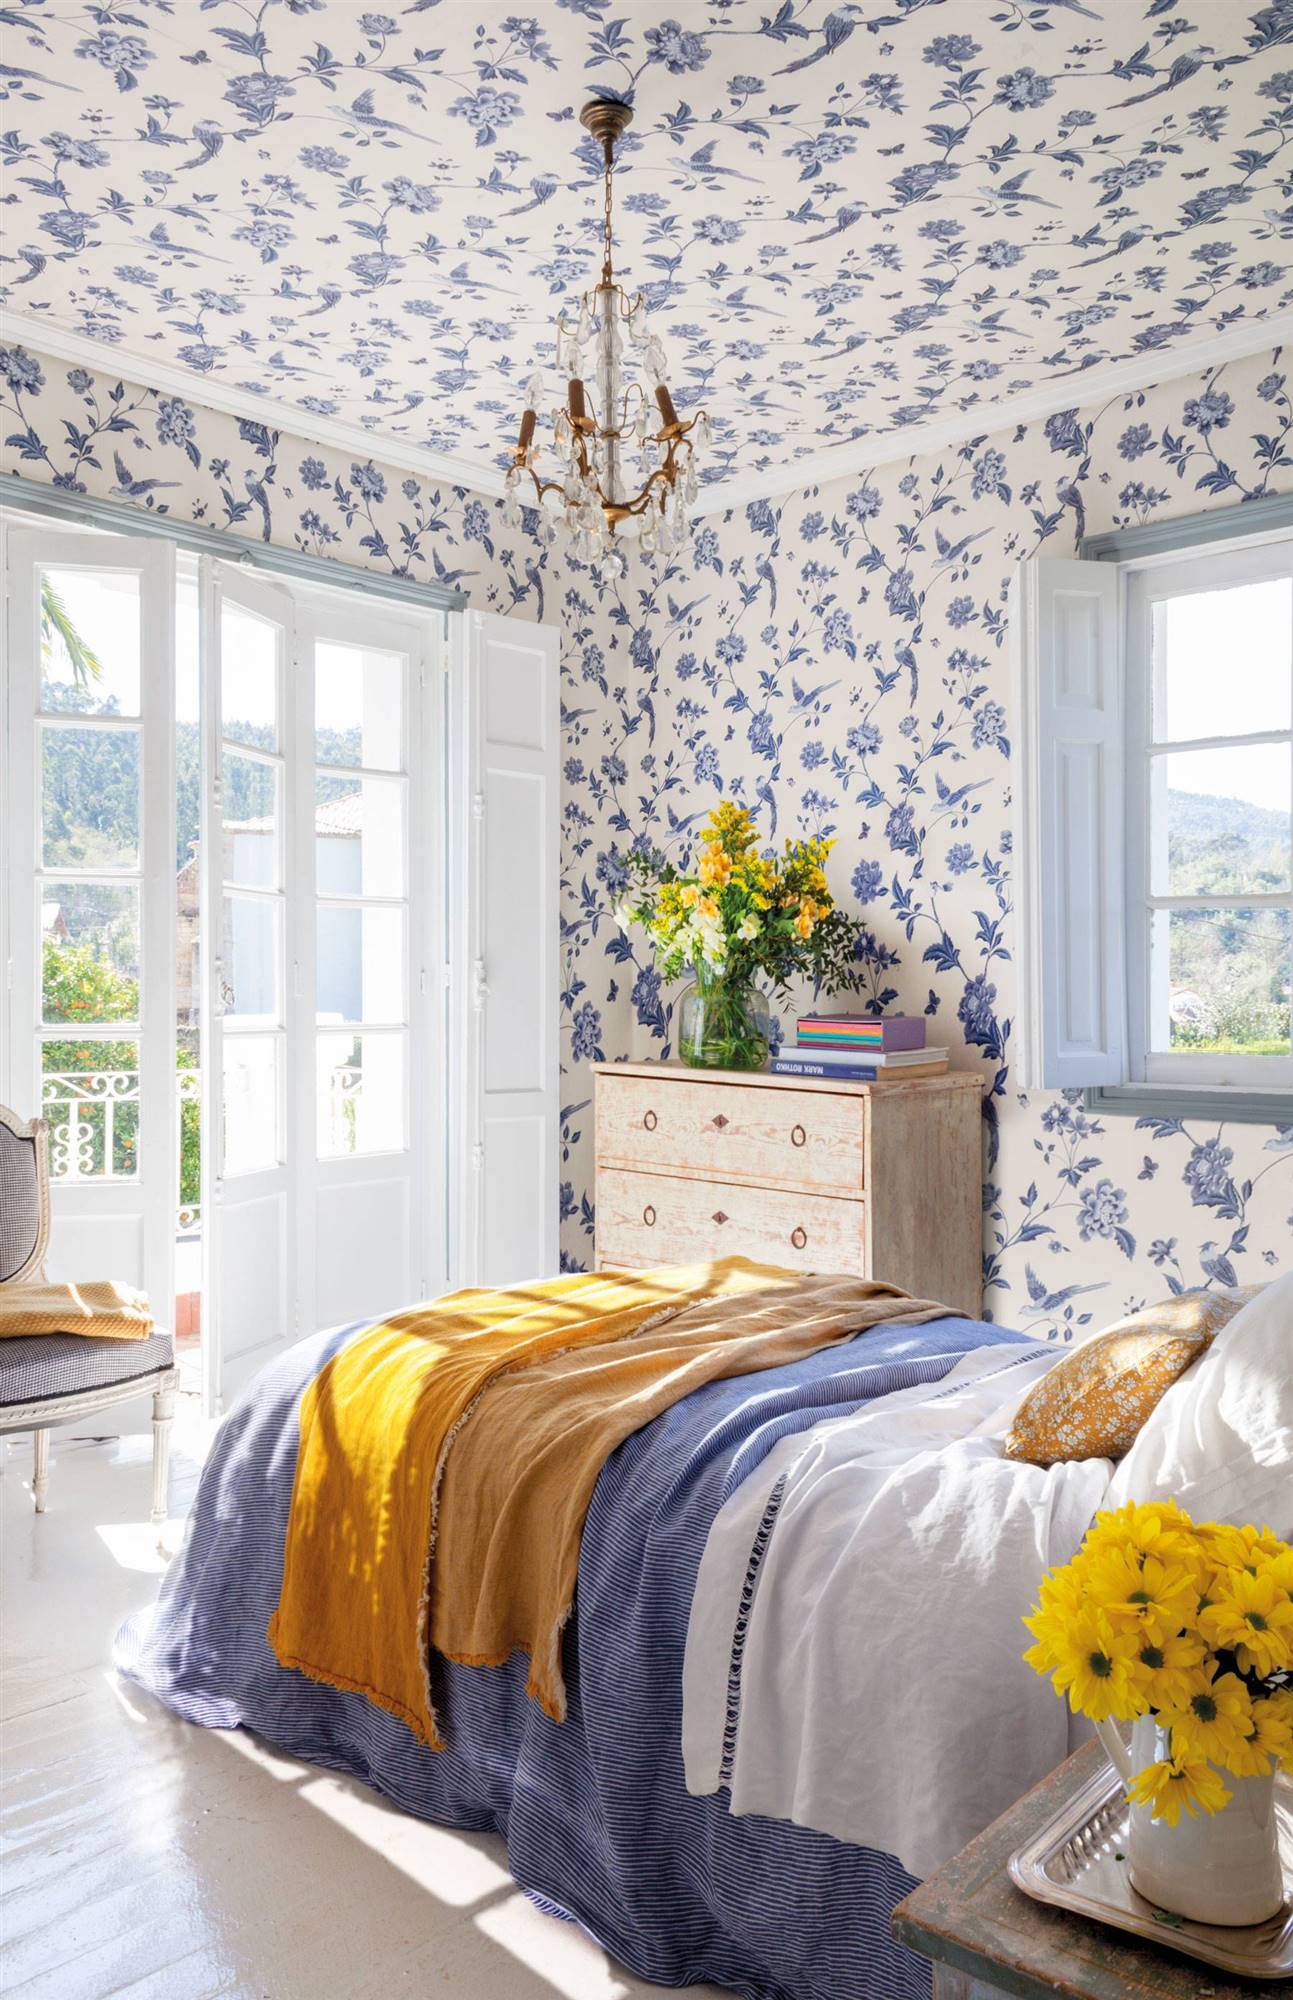 Dormitorio con papel pintado floral azul y blanco en paredes y techos 00457379